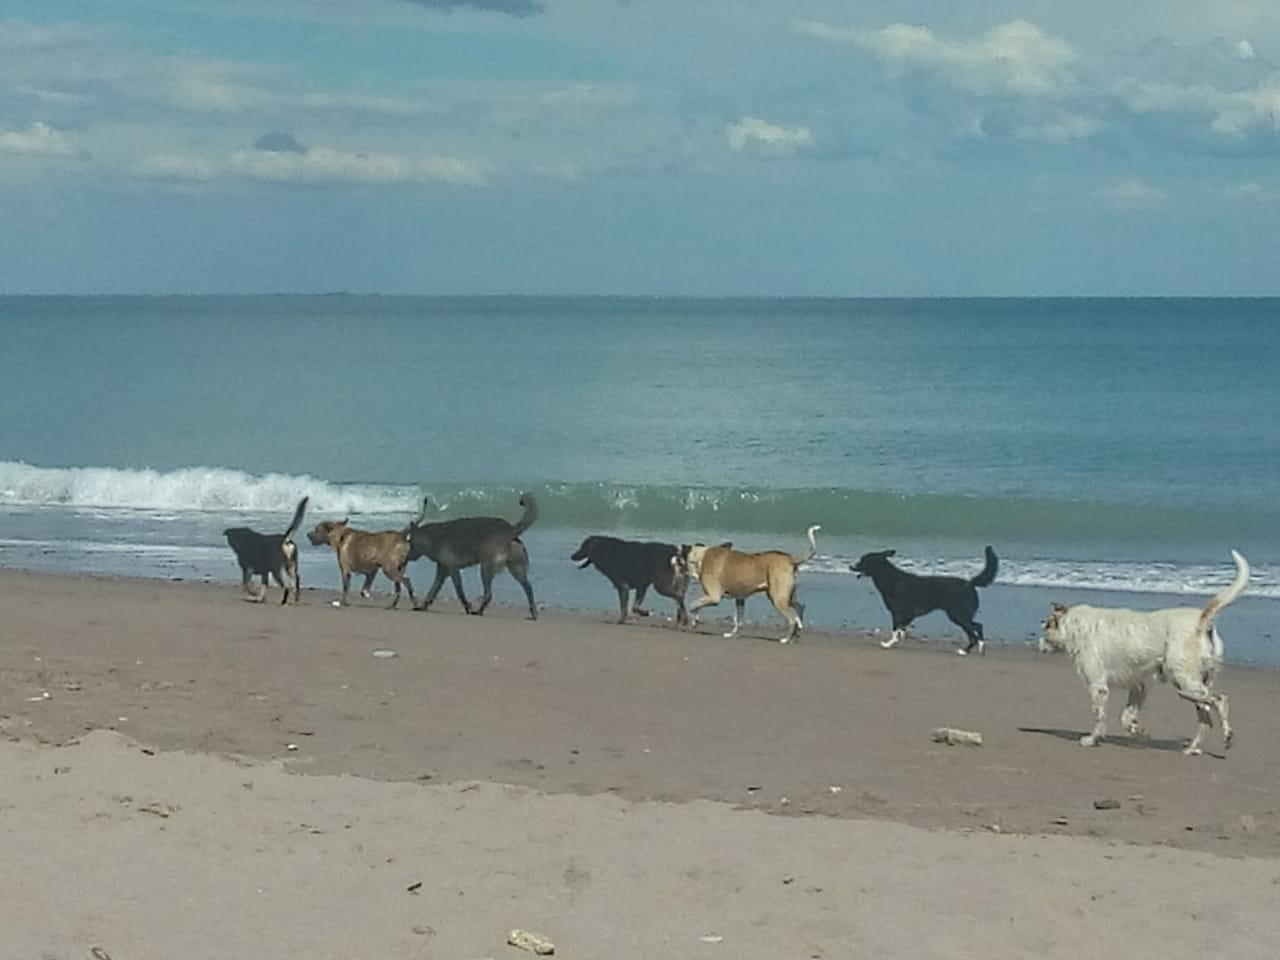 Los perros son un problema en las playas de Las Grutas. Los que atacaron al lobo marino en Terraza al mar tenían dueño